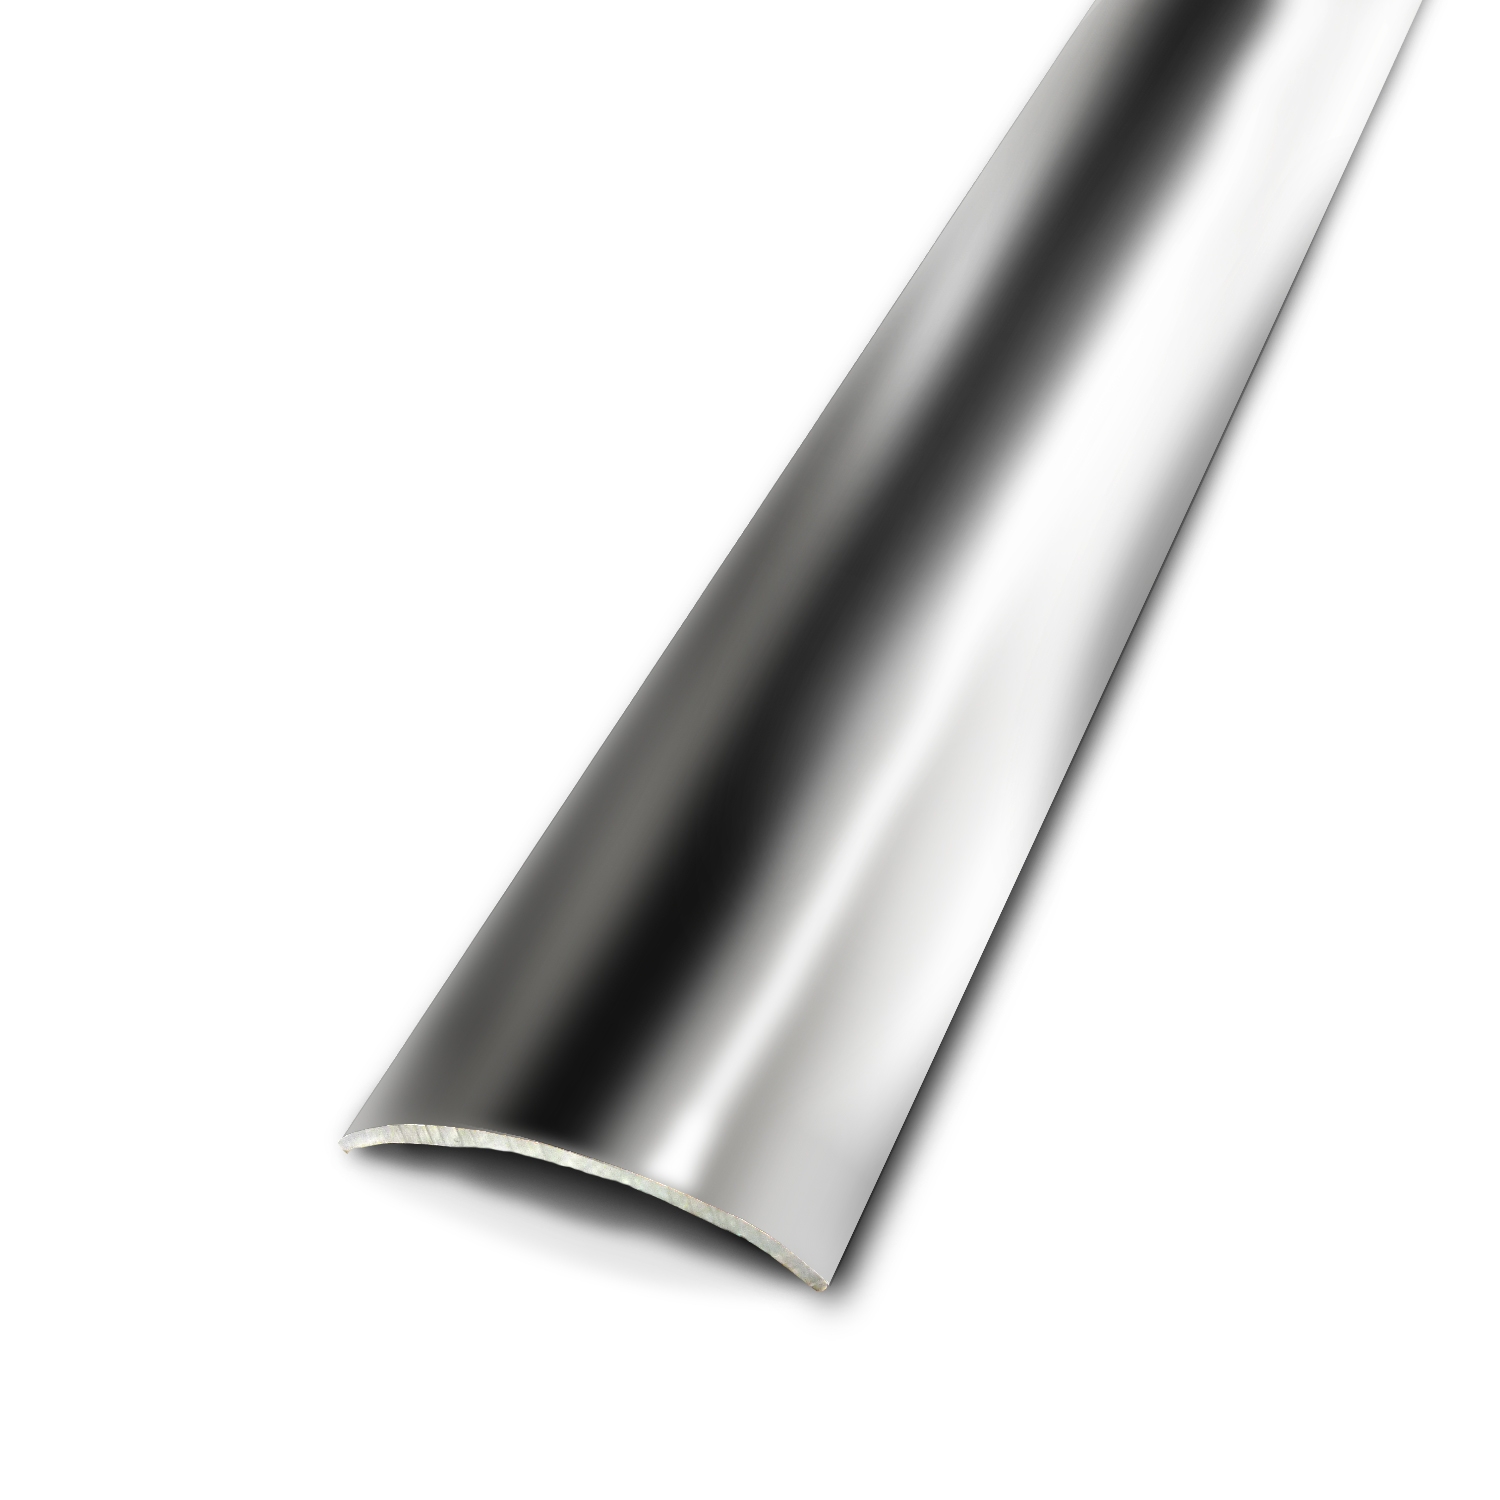 Barre de seuil plate adhésive métal hêtre revêtu 83 x 3 cm